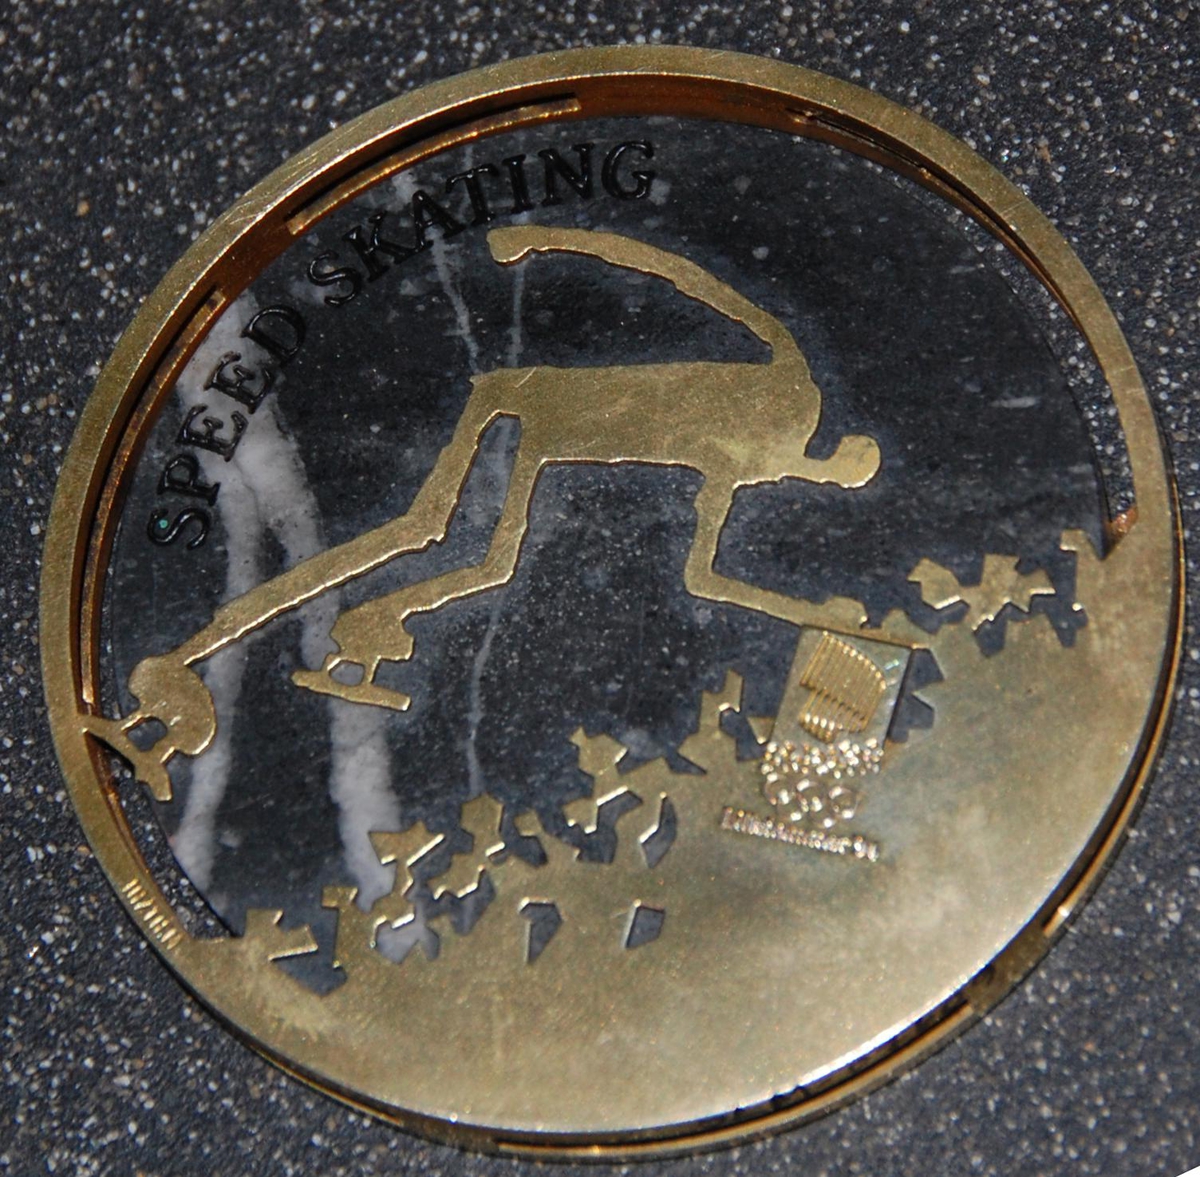 Medalje av metall og stein. På den ene siden er det motiv av de olympiske ringene over krystallmønster. På den andre siden er det piktogram av en skøyteløper og emblemet for de olympiske vinterleker på Lillehammer i 1994. Medaljen er plassert på et stativ av granitt.